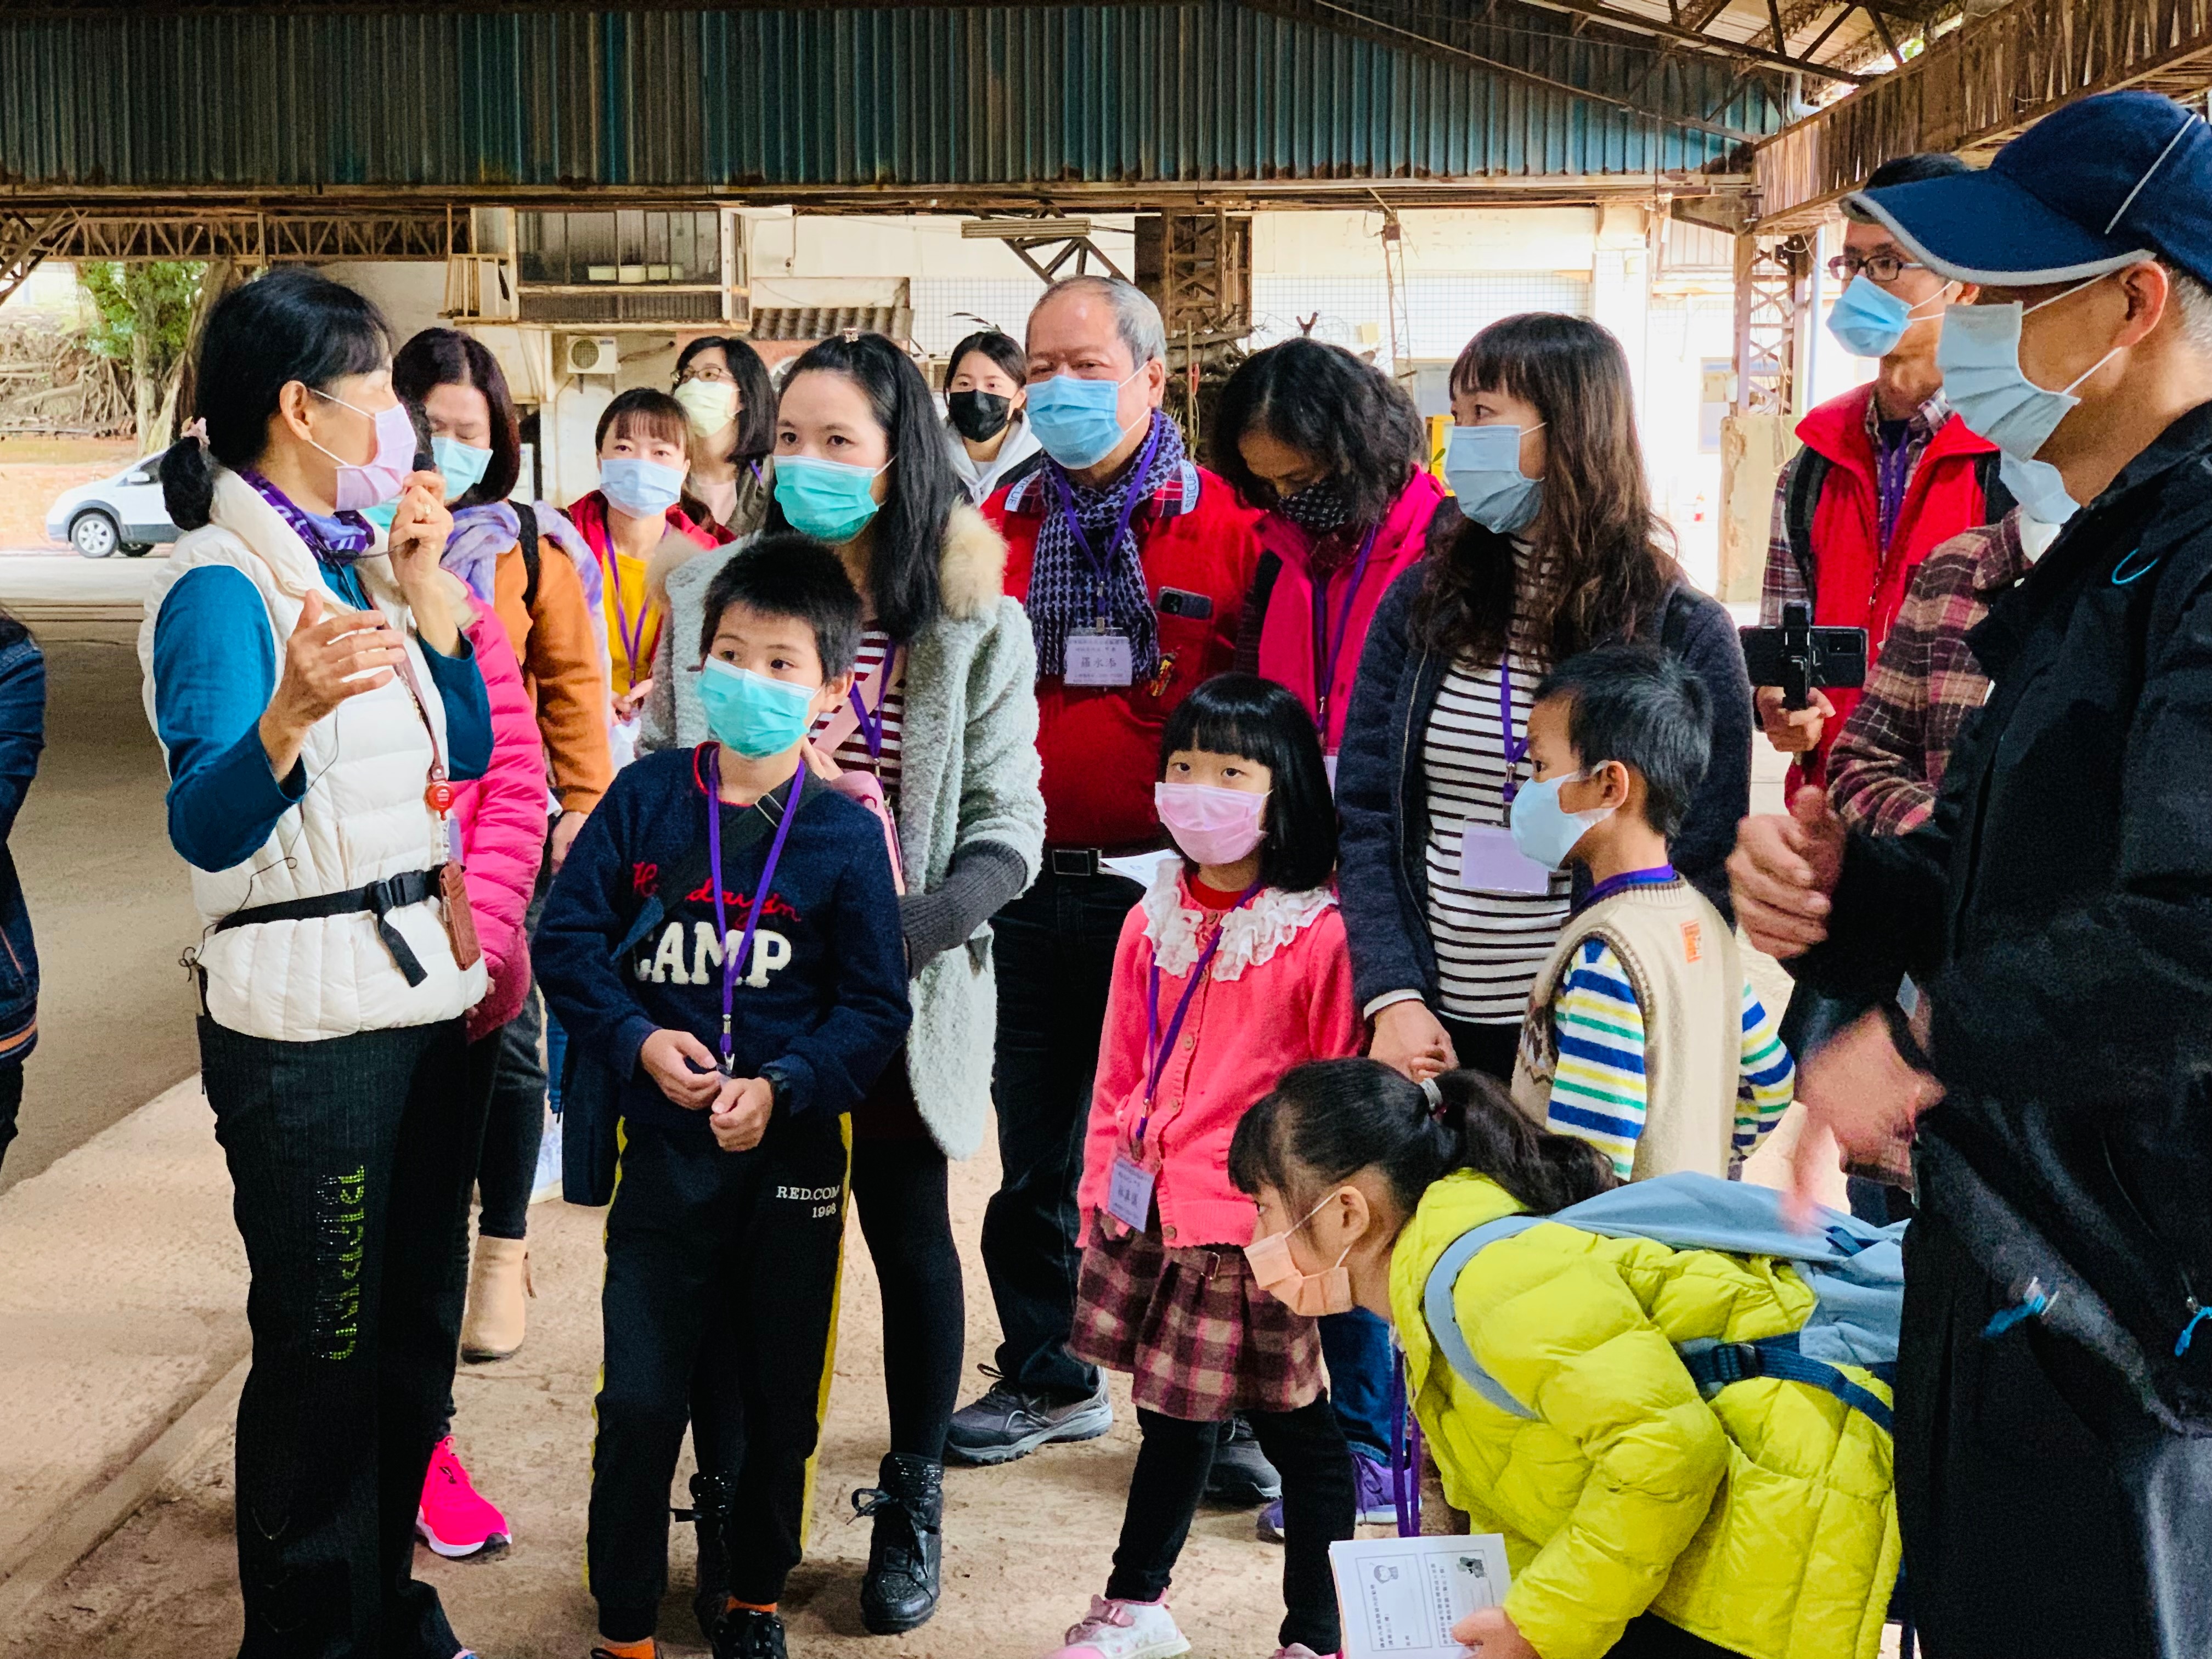 Ngày 13/11 vừa qua, chính quyền huyện Miêu Lật phối hợp với Trung tâm Dịch vụ gia đình huyện Miêu Lật đã tổ chức hoạt động giao lưu đa văn hóa và ngày hội gia đình năm 2021. (Nguồn ảnh: Trung tâm Dịch vụ gia đình huyện Miêu Lật)